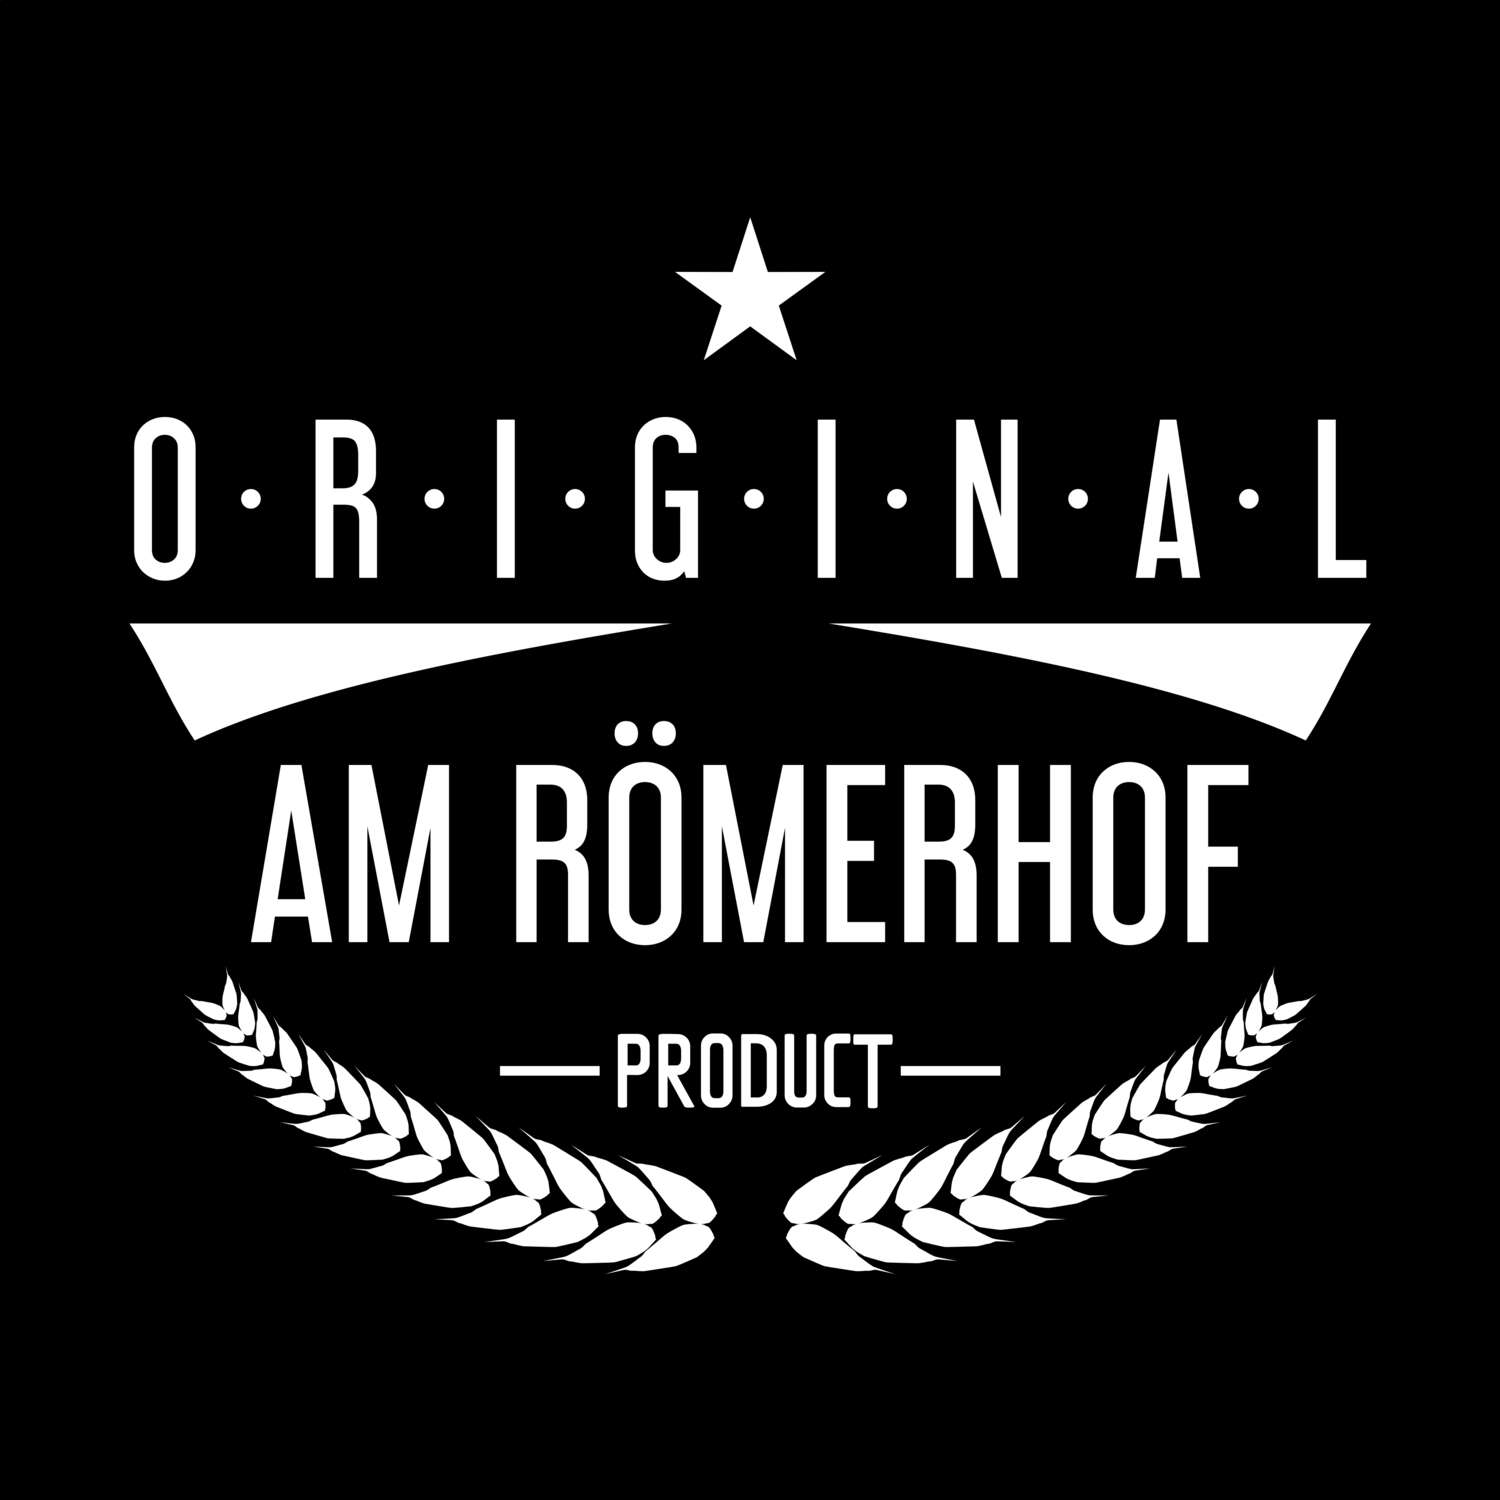 Am Römerhof T-Shirt »Original Product«